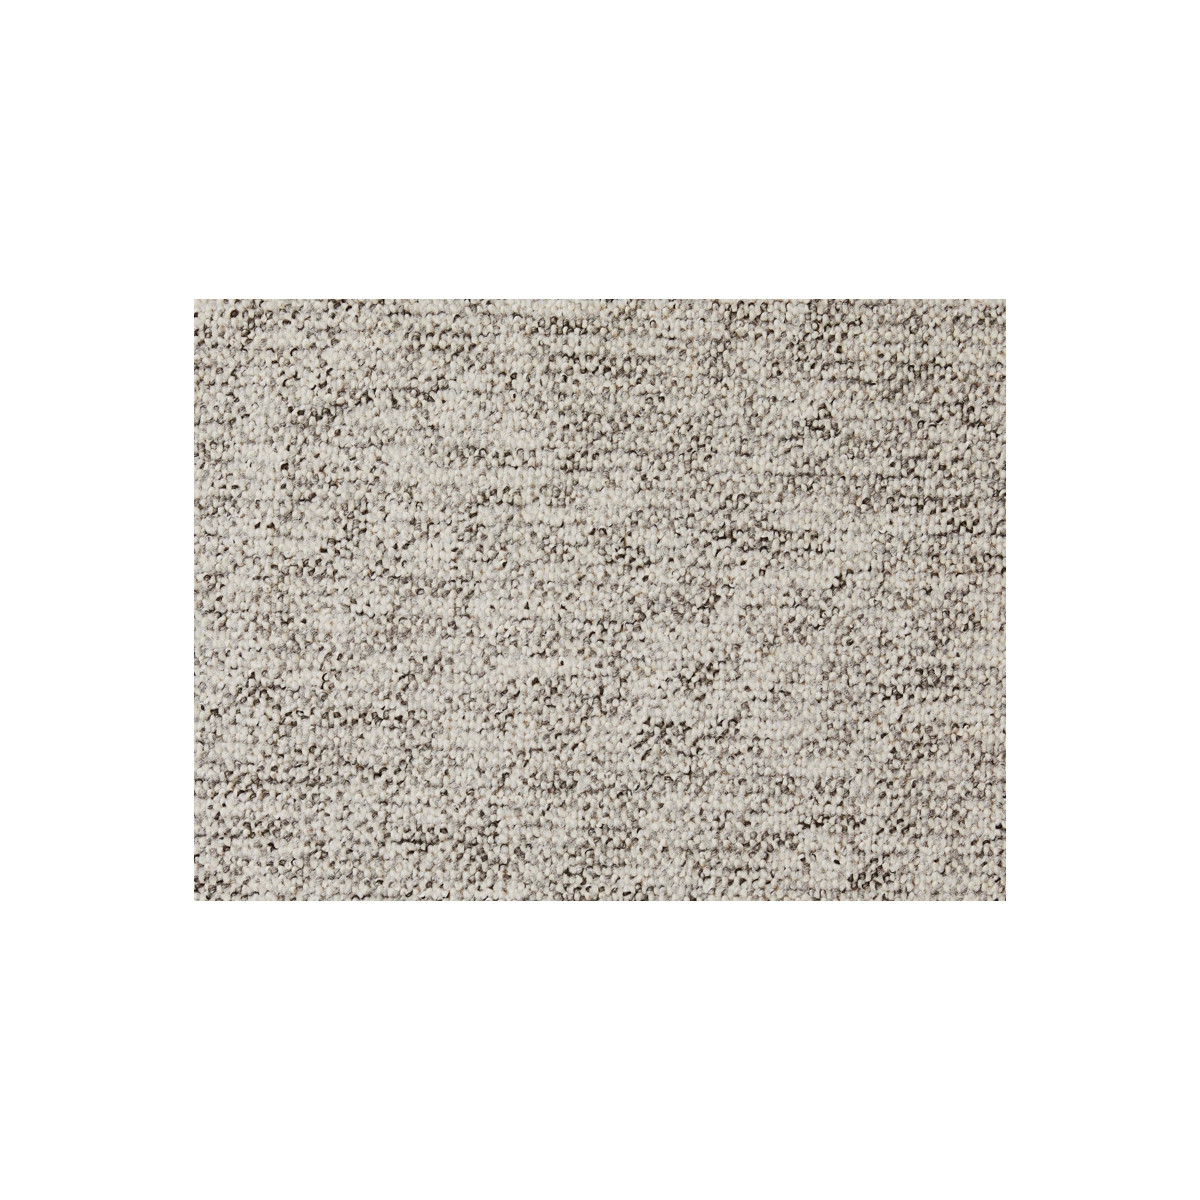 AKCE: 300x75 cm Metrážový koberec Monaco 72 sv.šedý 